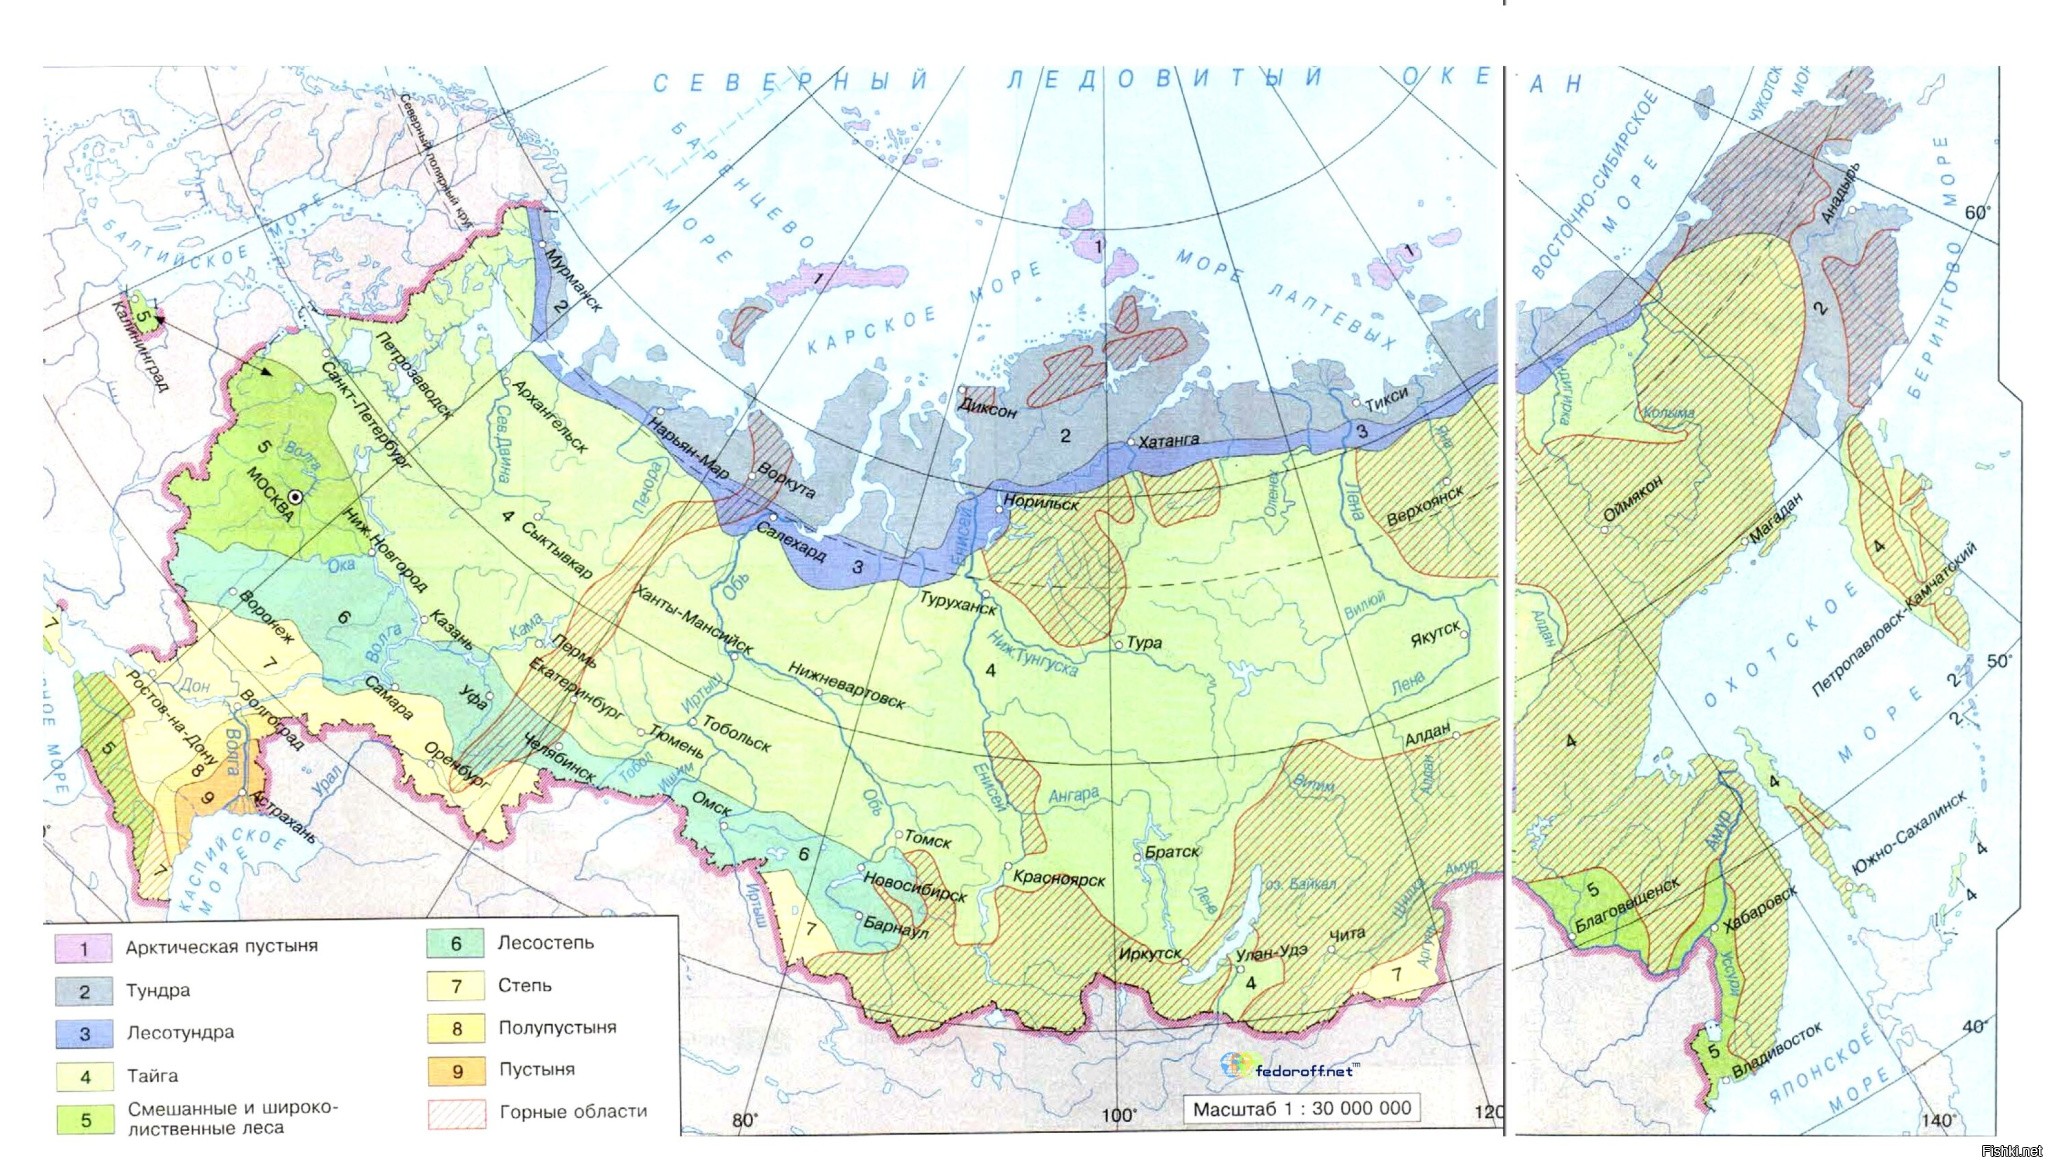 Черно белая карта природных зон россии 4 класс